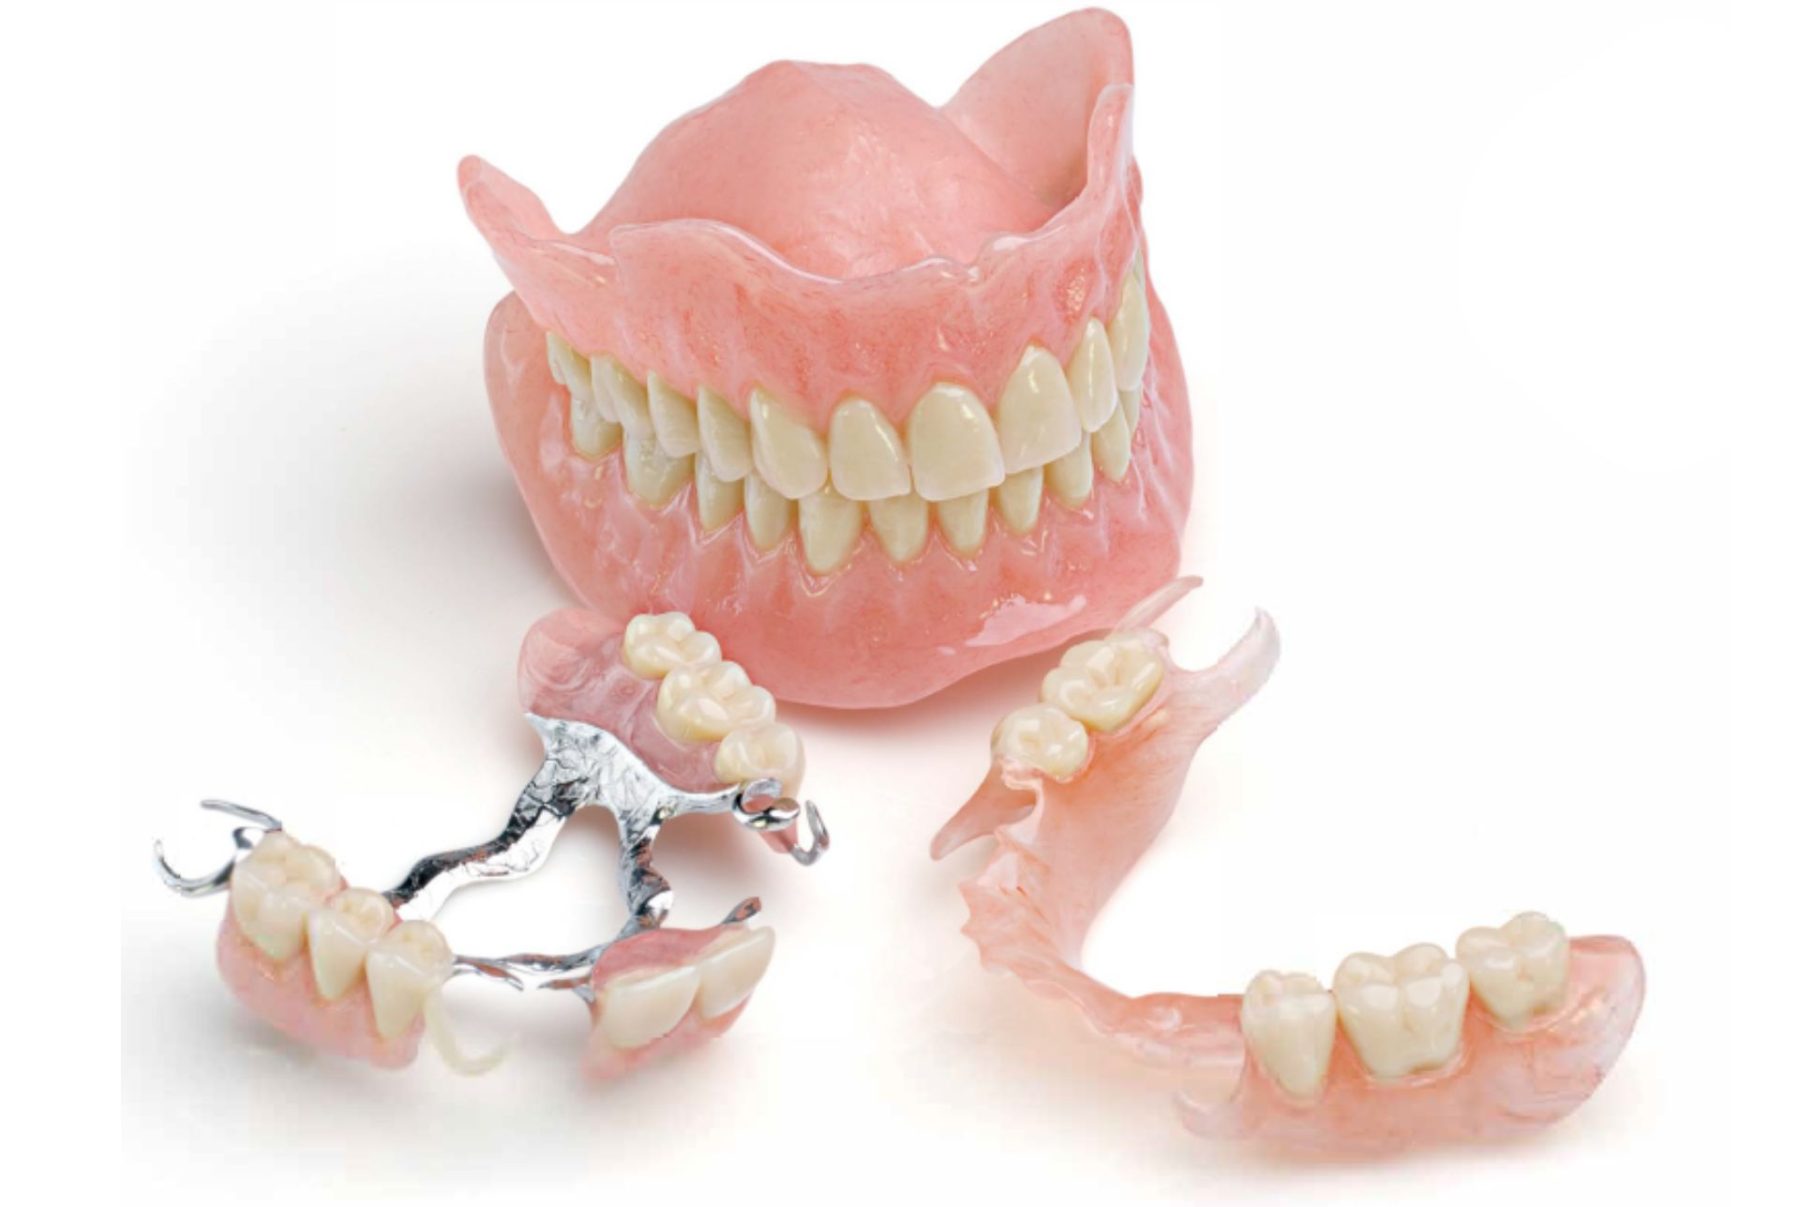 dental laboratory for dentures